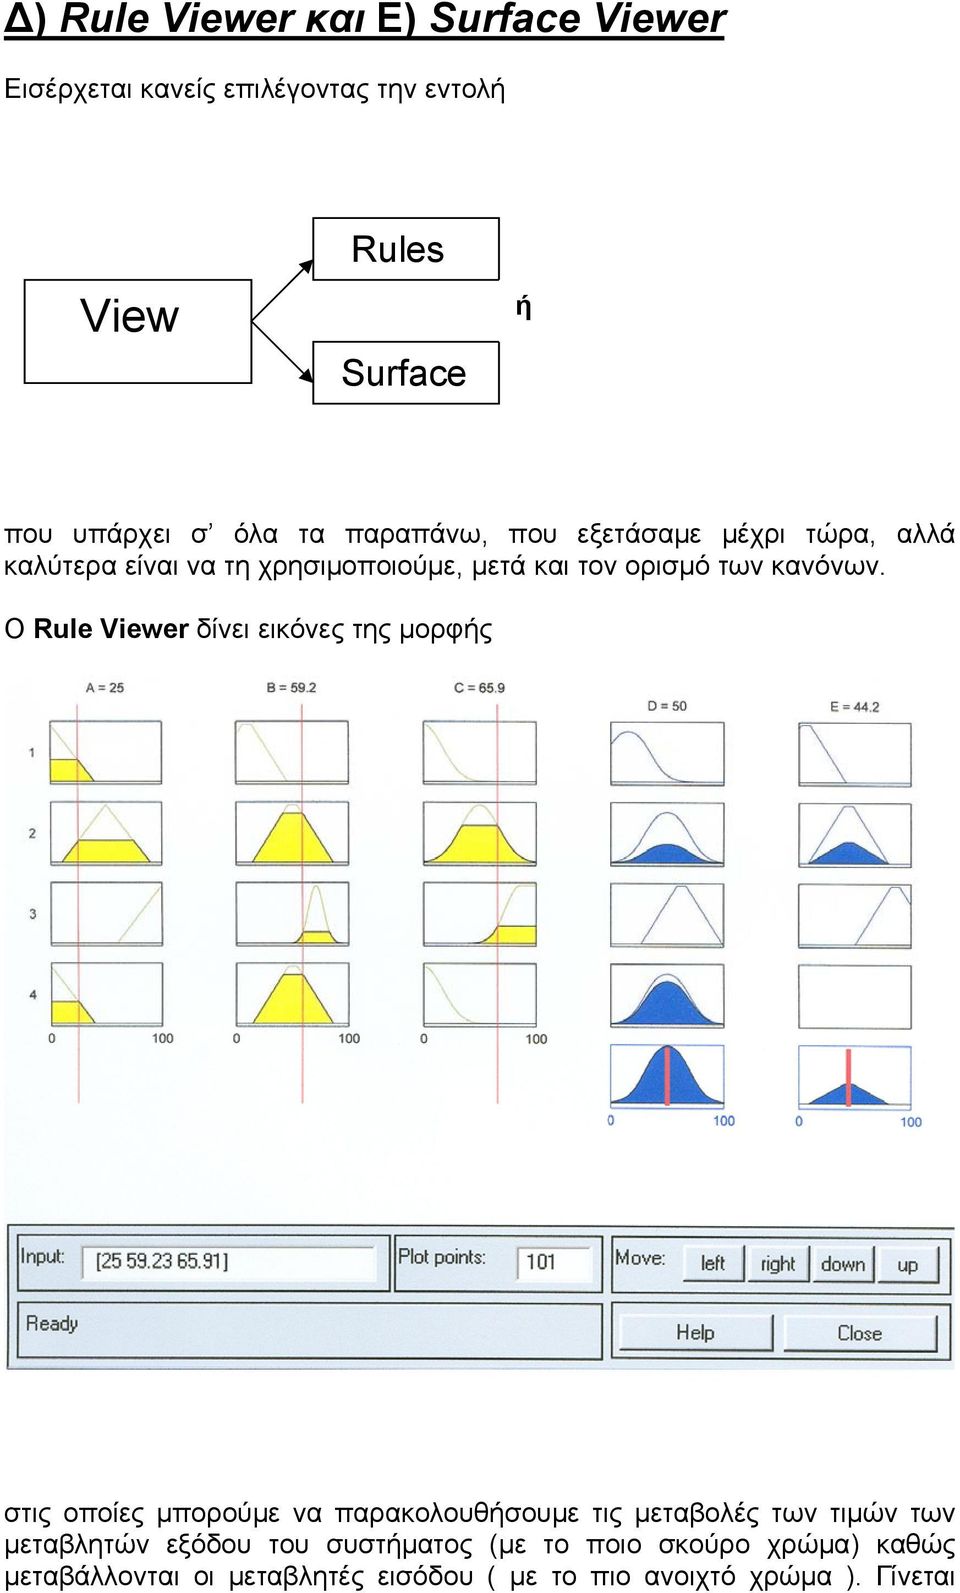 Ο Rule Viewer δίνει εικόνες της μορφής στις οποίες μπορούμε να παρακολουθήσουμε τις μεταβολές των τιμών των μεταβλητών